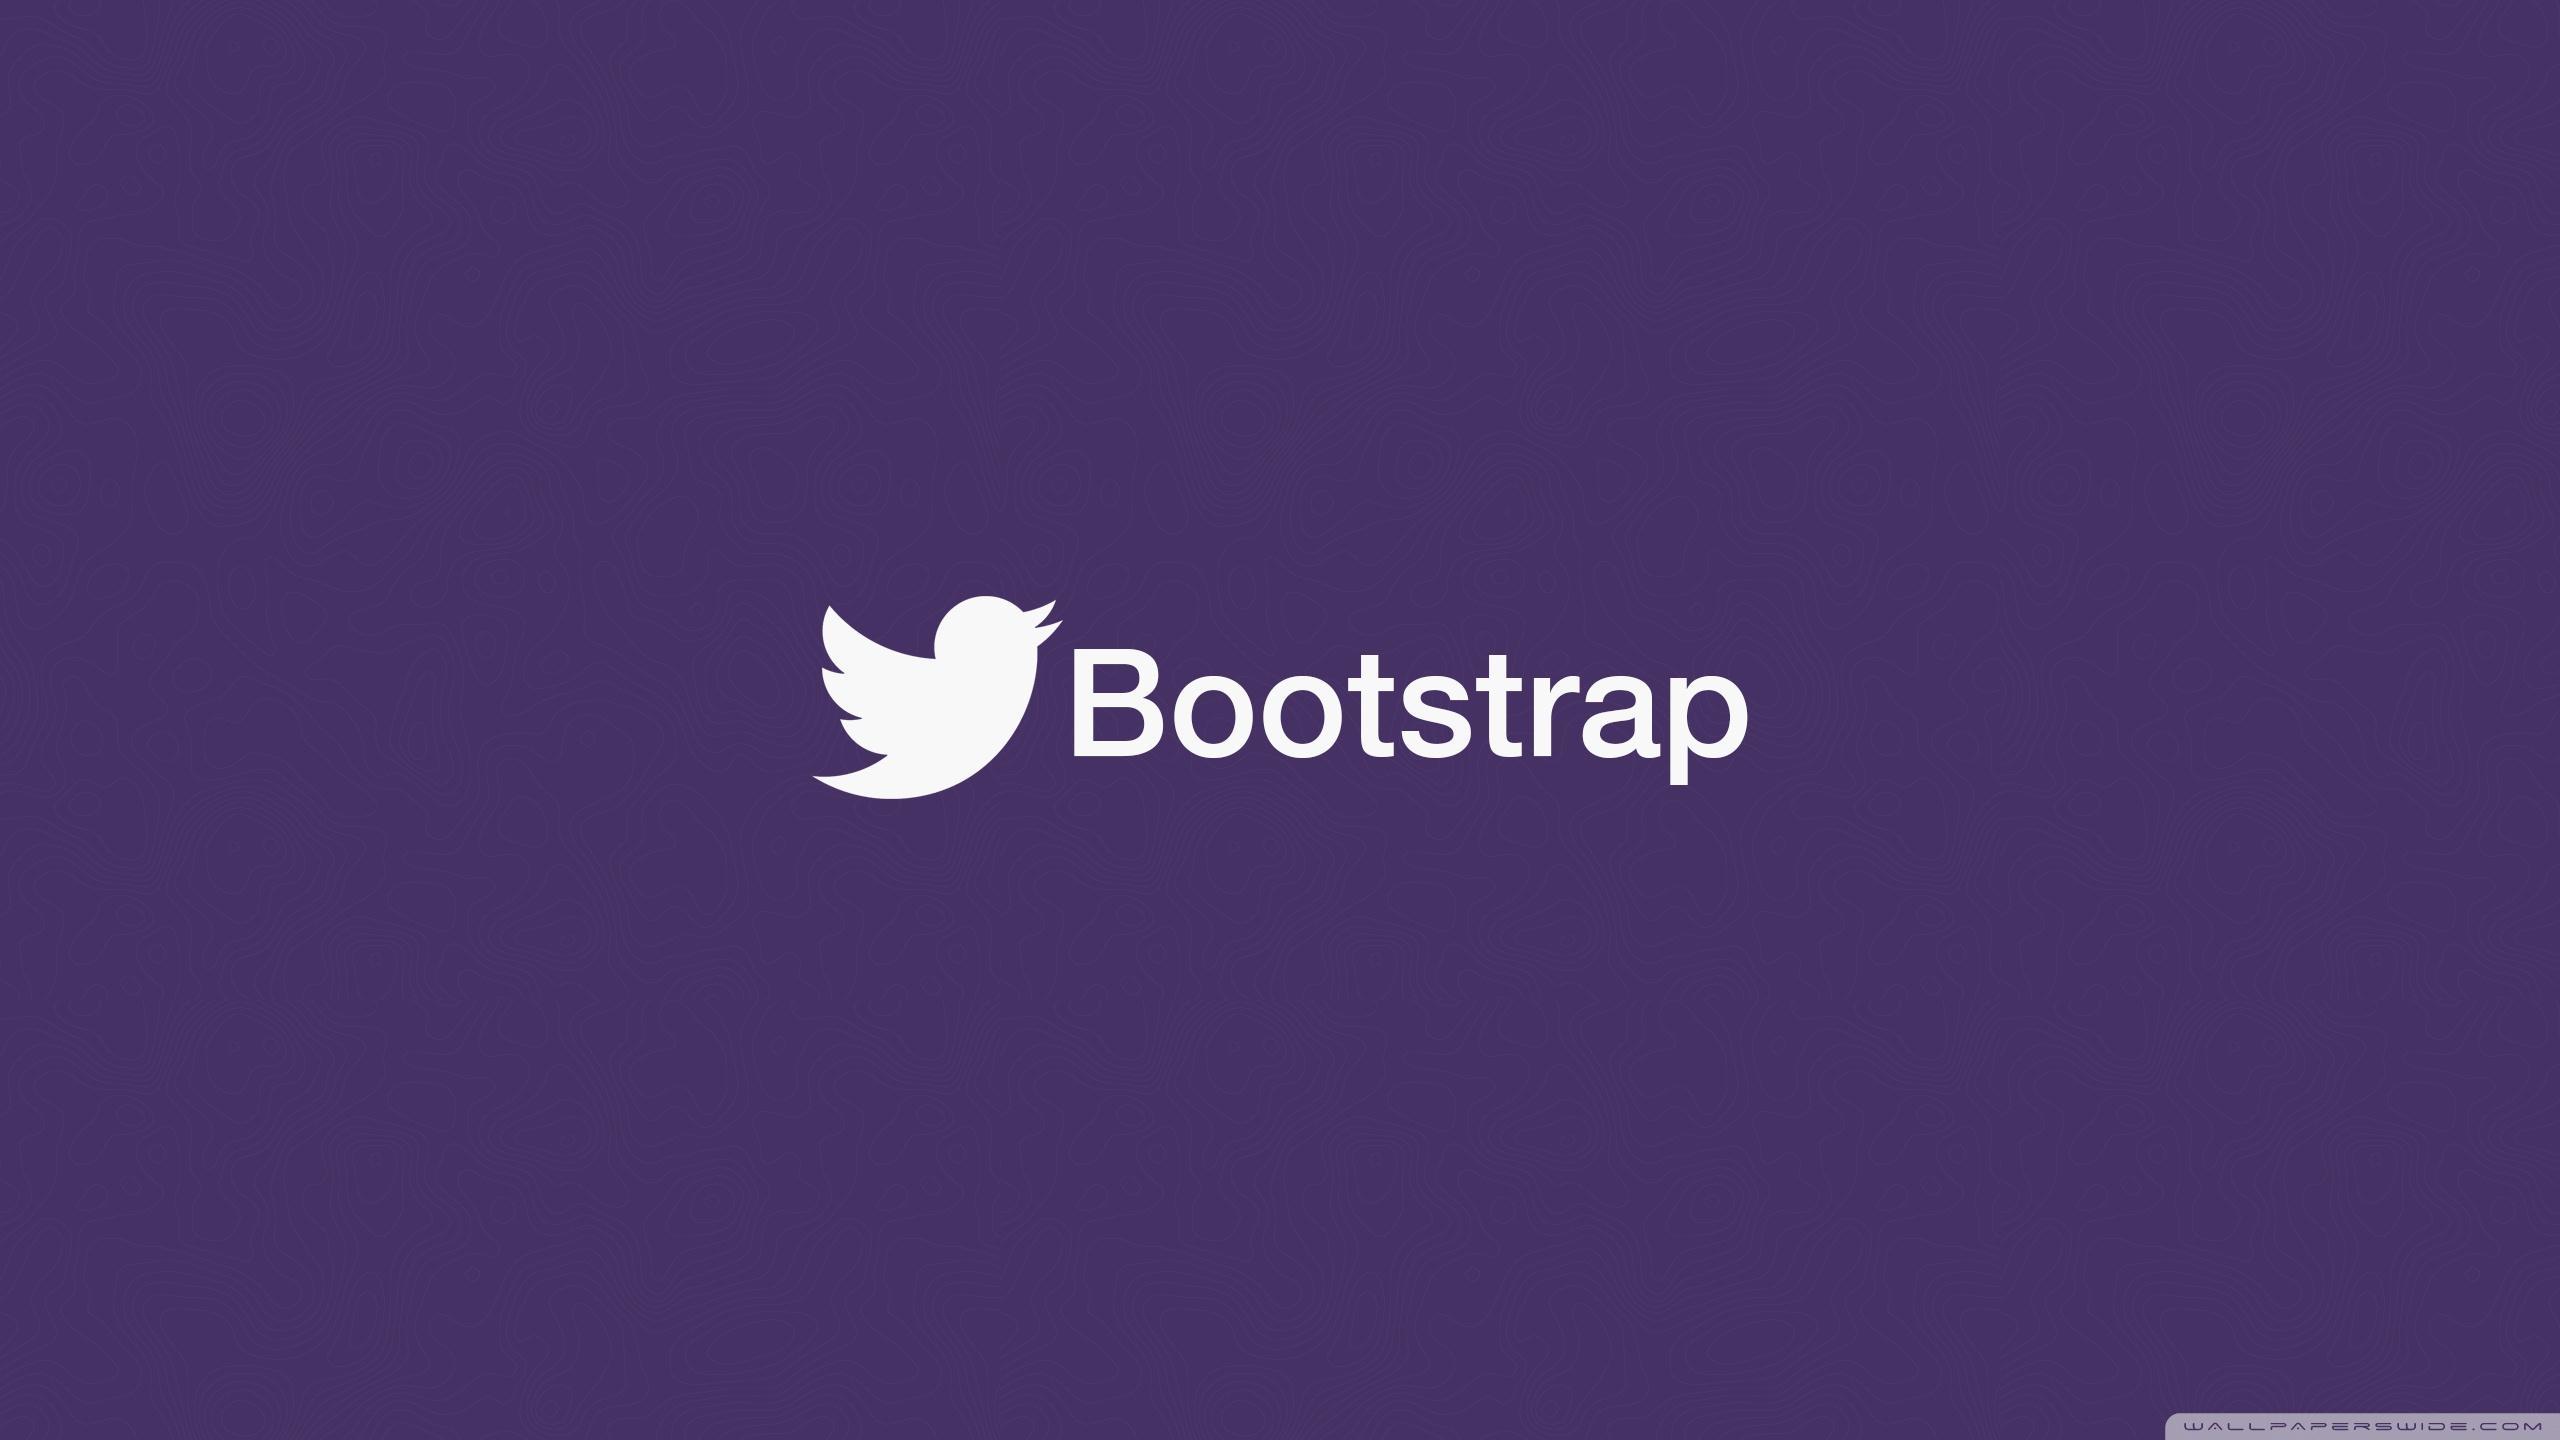 Bootstrap wallpapers: Bộ sưu tập hình nền Bootstrap đa dạng và phong phú với nhiều chủ đề khác nhau. Tại đây, bạn có thể tìm kiếm những hình ảnh ấn tượng để tạo ra một trang web đẹp mắt và thu hút người dùng.